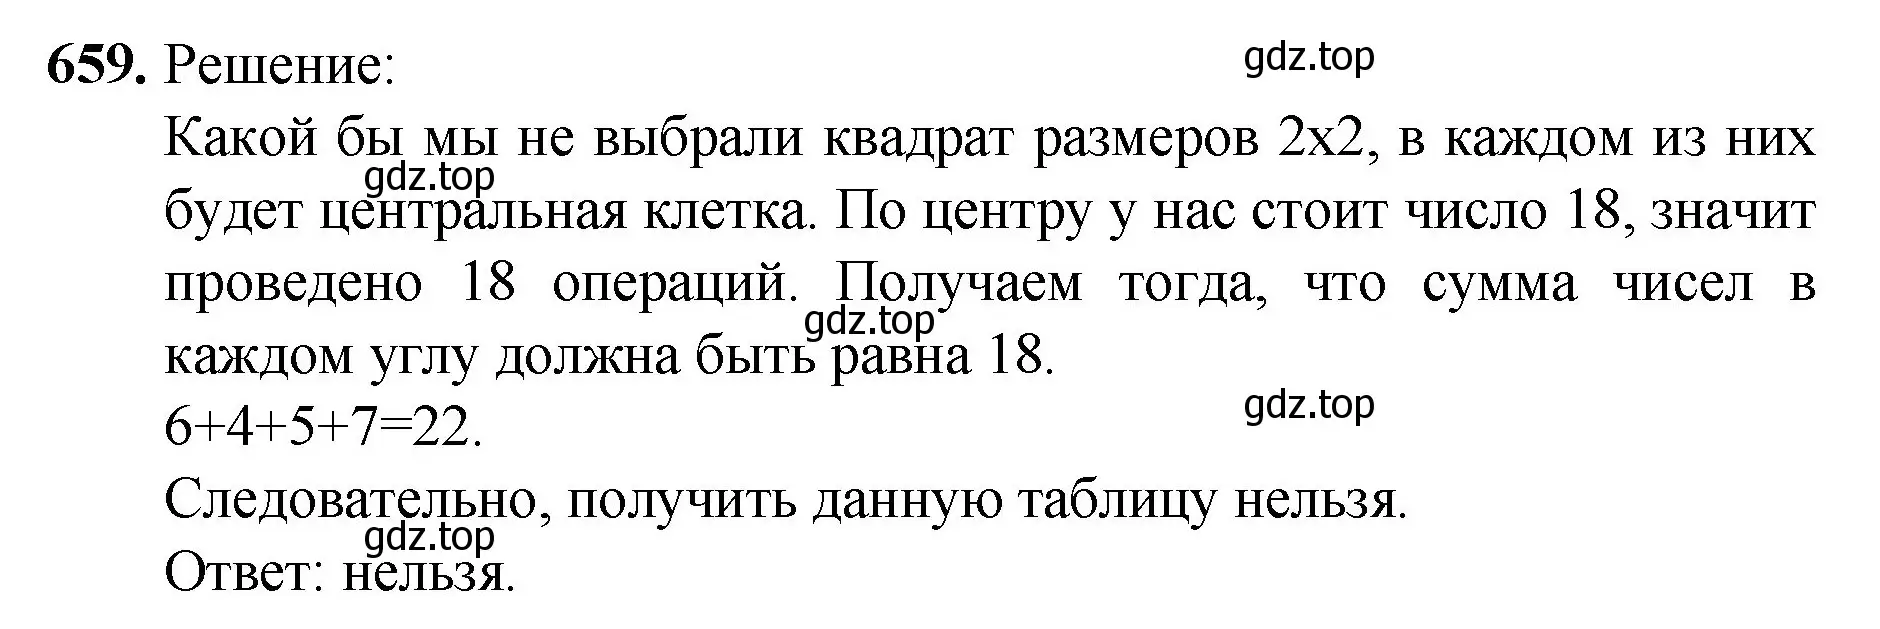 Решение номер 659 (страница 151) гдз по математике 5 класс Мерзляк, Полонский, учебник